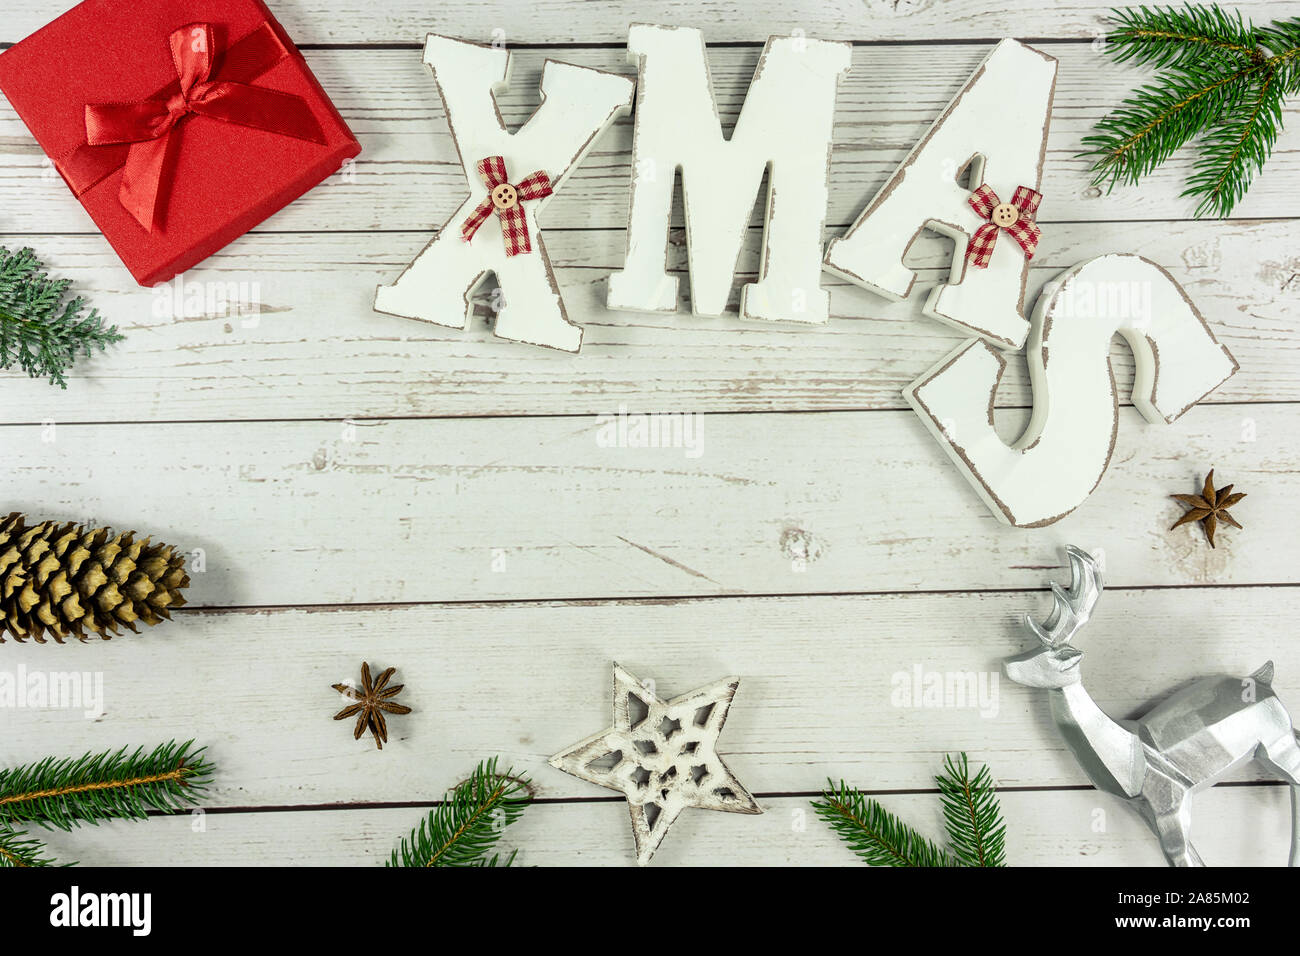 Weihnachten Rahmen Hintergrund flach auf weißem Holz mit roter Geschenkbox Weihnachten text und andere natürliche Dekoration Stockfoto